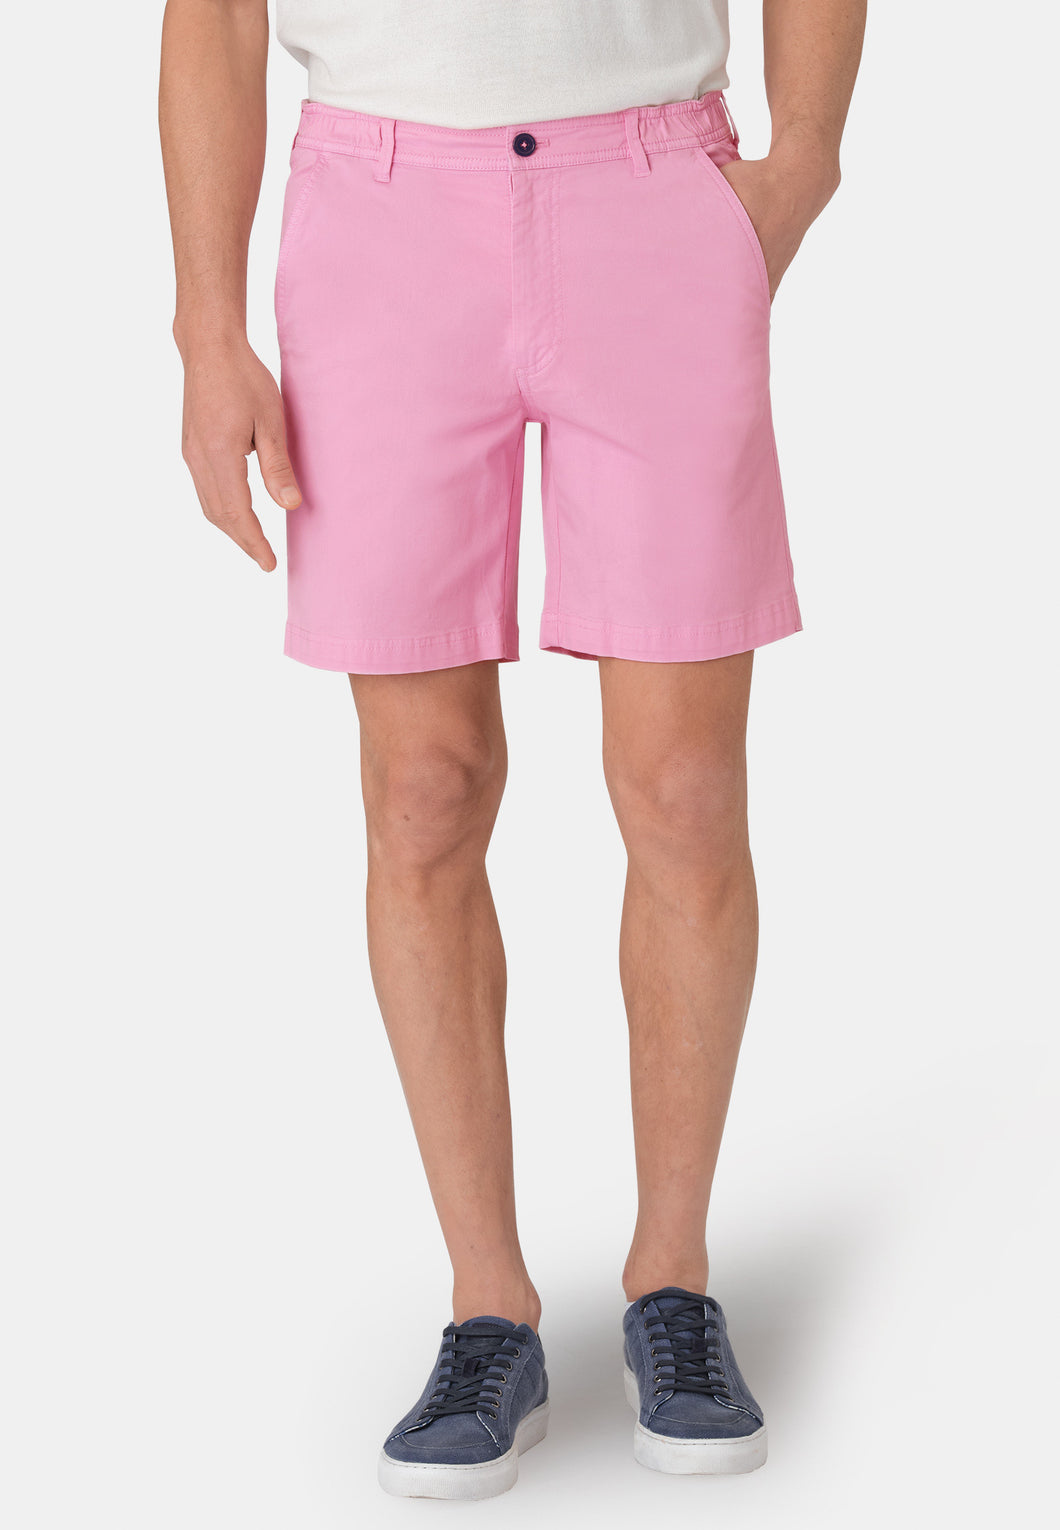 BROOK TAVERNER <BR>
Ribblesdale Cotton Shorts <BR>
Pink <BR>